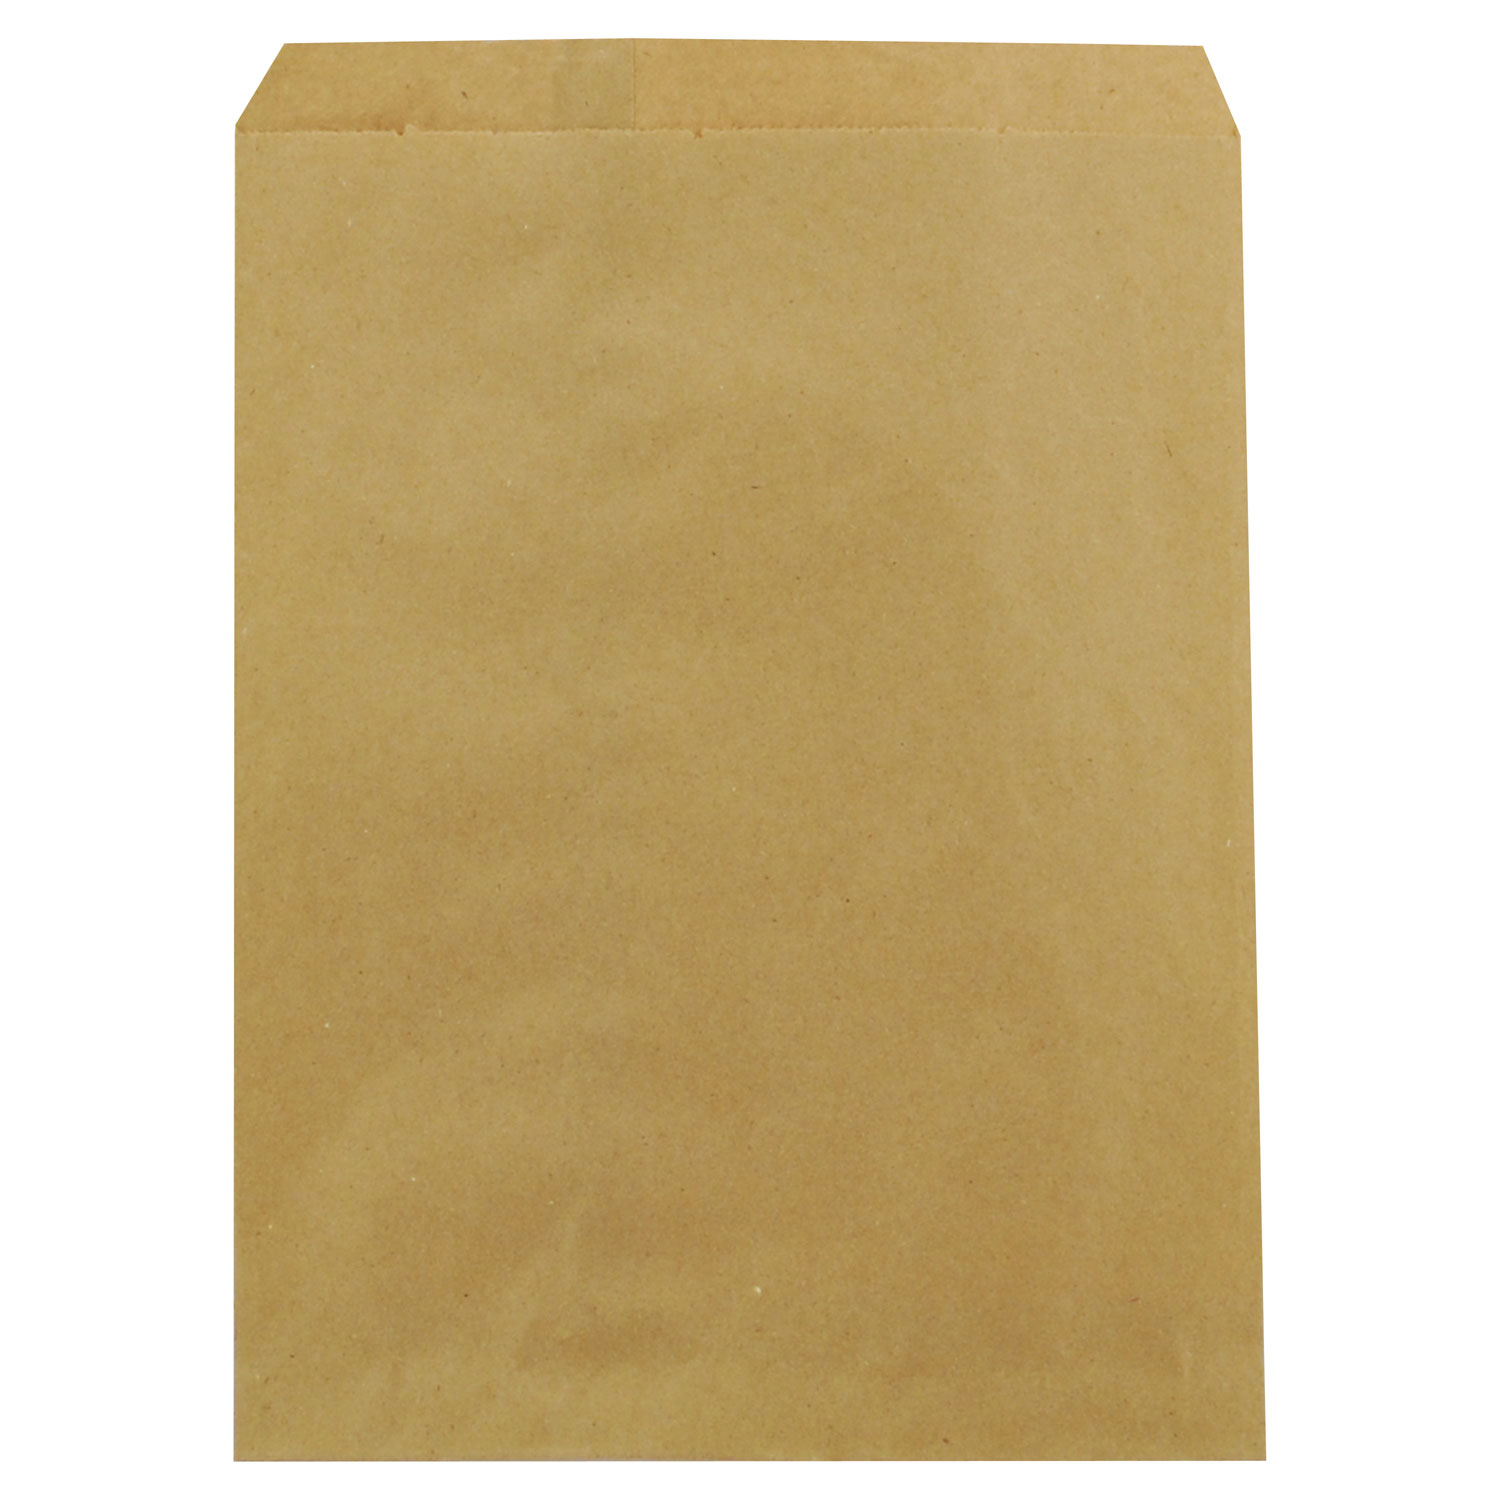  Duro Bag 14852 Kraft Paper Bags, 8.5 x 11, Brown, 2,000/Carton (BAGMK85112000) 